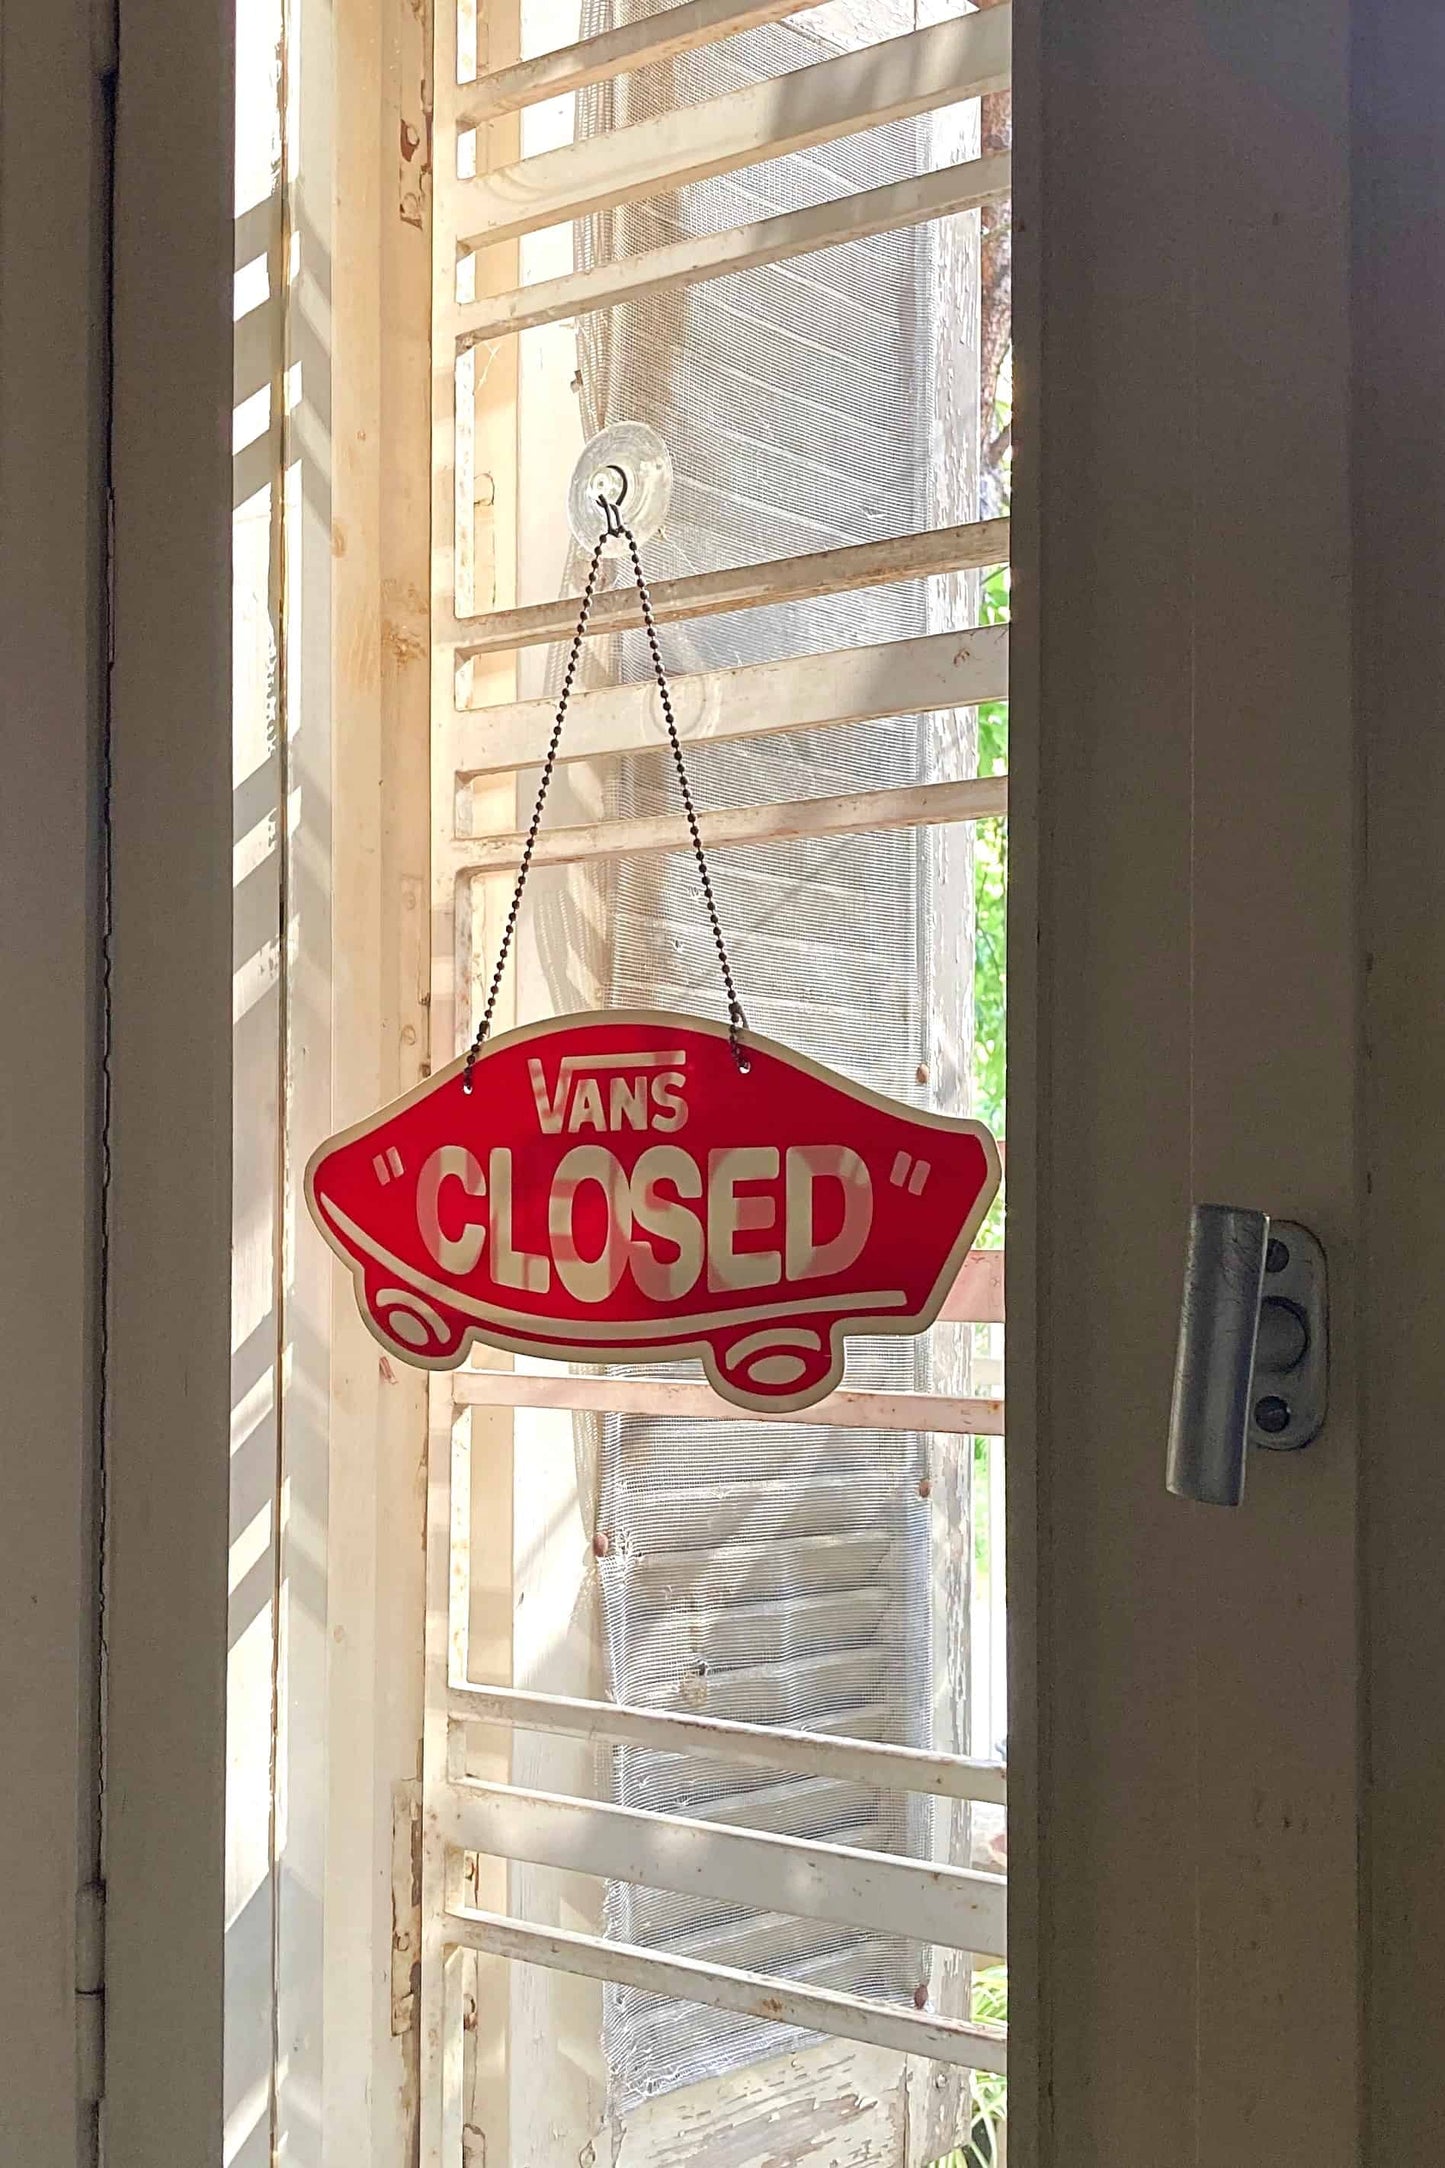 VANS Open/Closed Door Sign on a window